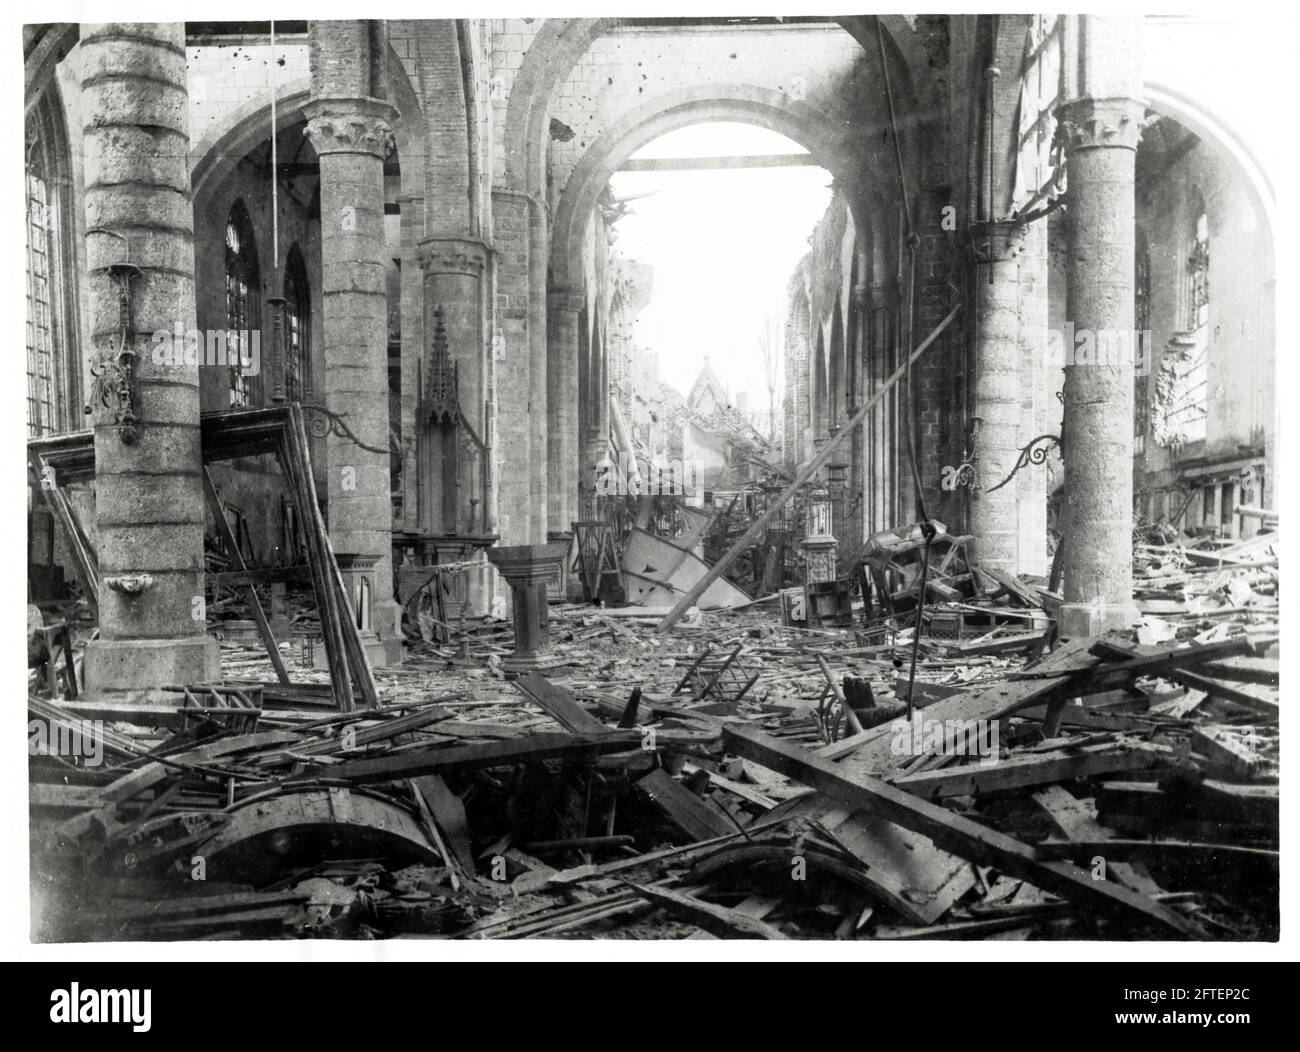 Première Guerre mondiale, première Guerre mondiale, Front occidental - intérieur ruiné de l'église, Ypres, Flandre Occidentale, Belgique Banque D'Images